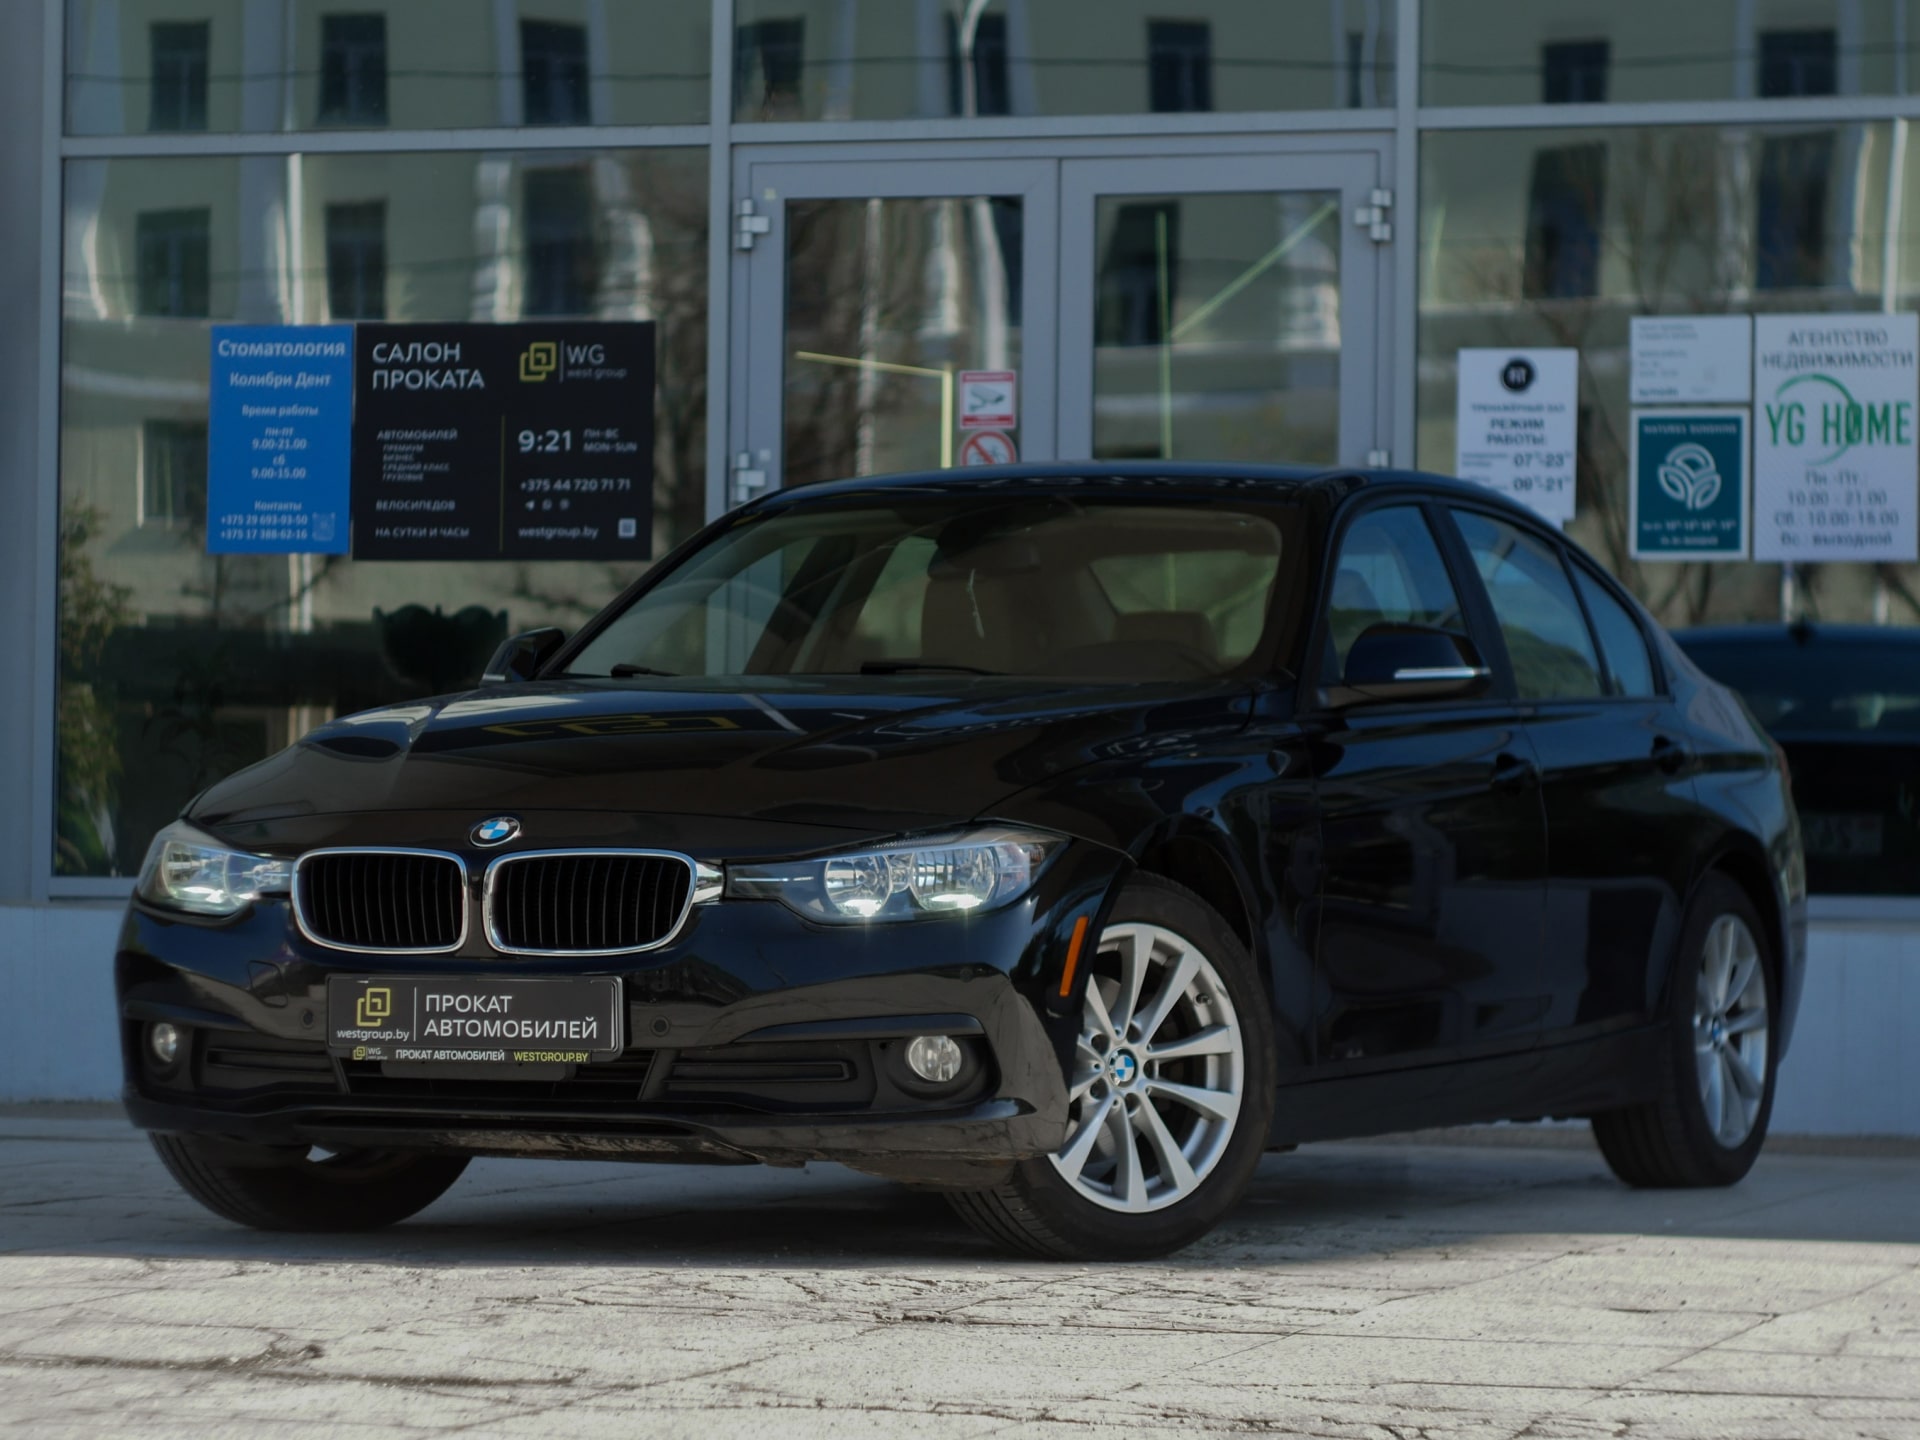 Аренда  BMW 320i F30  2 класса 2018 года в городе Минск от 65 $/сутки,  двигатель: Бензин , объем 2.0i литров, КАСКО (Мультидрайв), без водителя, вид 1 - West Group